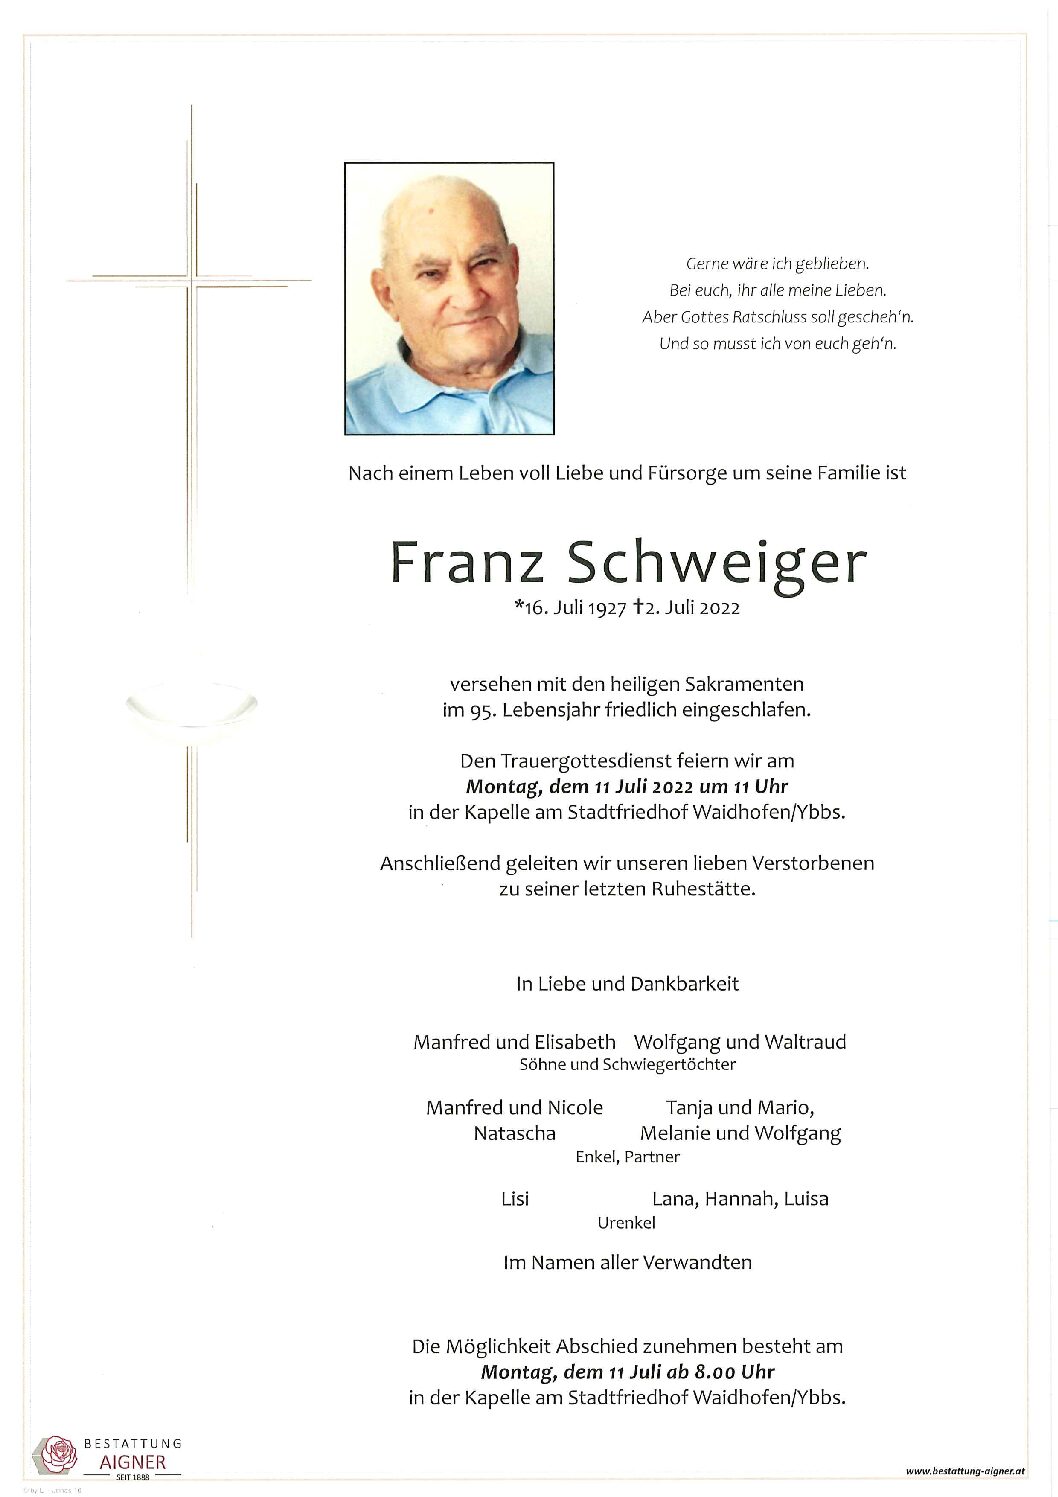 Franz Schweiger